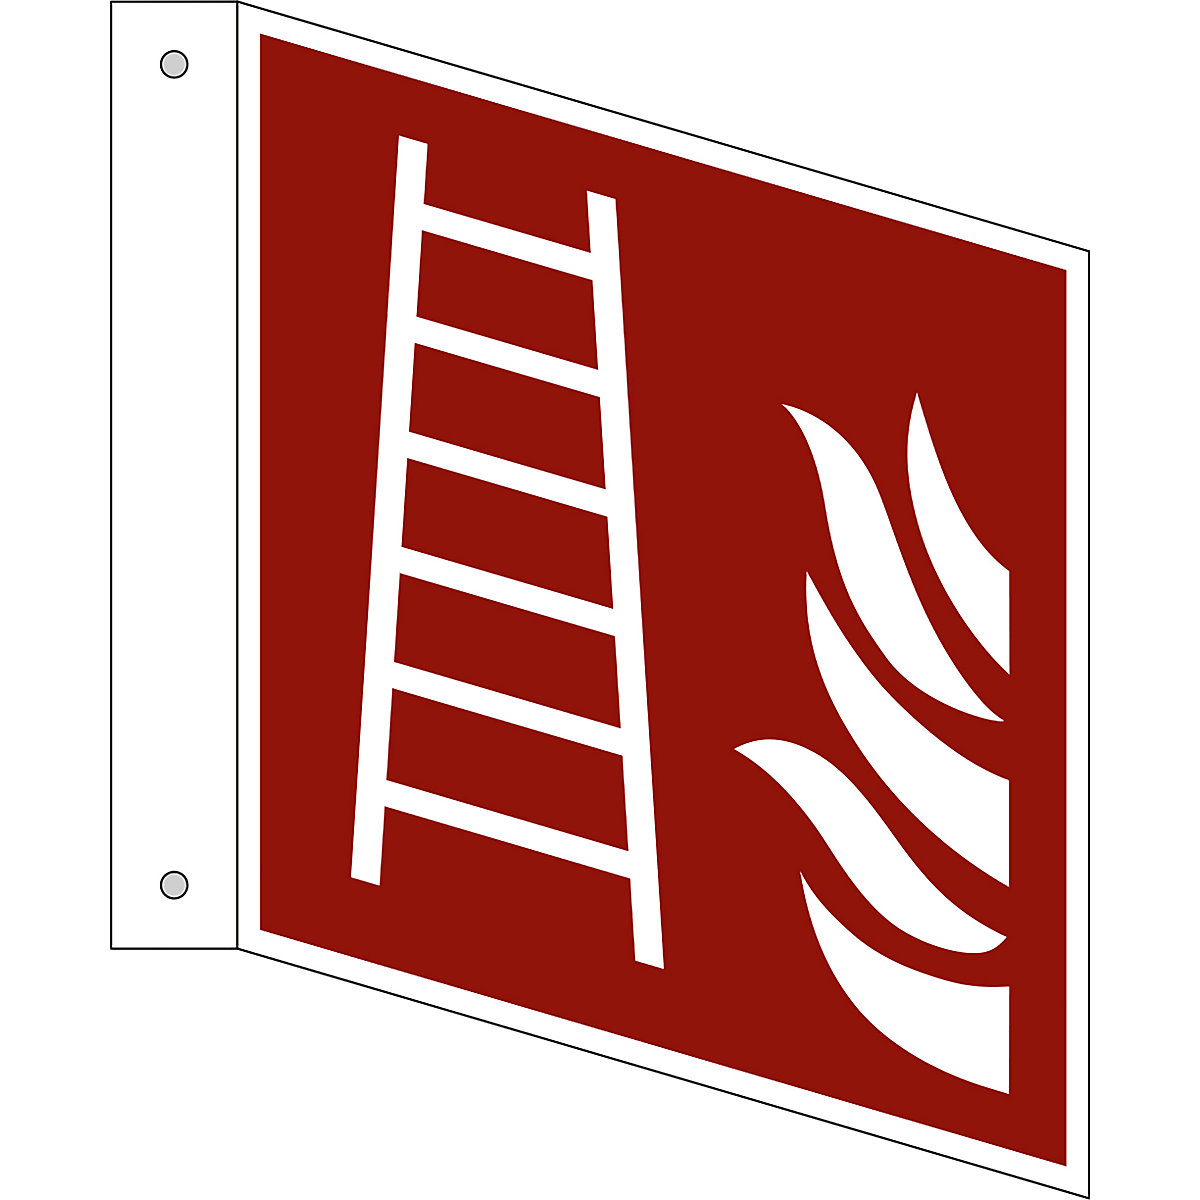 Značka pro ochranu proti požáru, žebřík, bal.j. 10 ks, hliník, vlajkový štítek, 150 x 150 mm